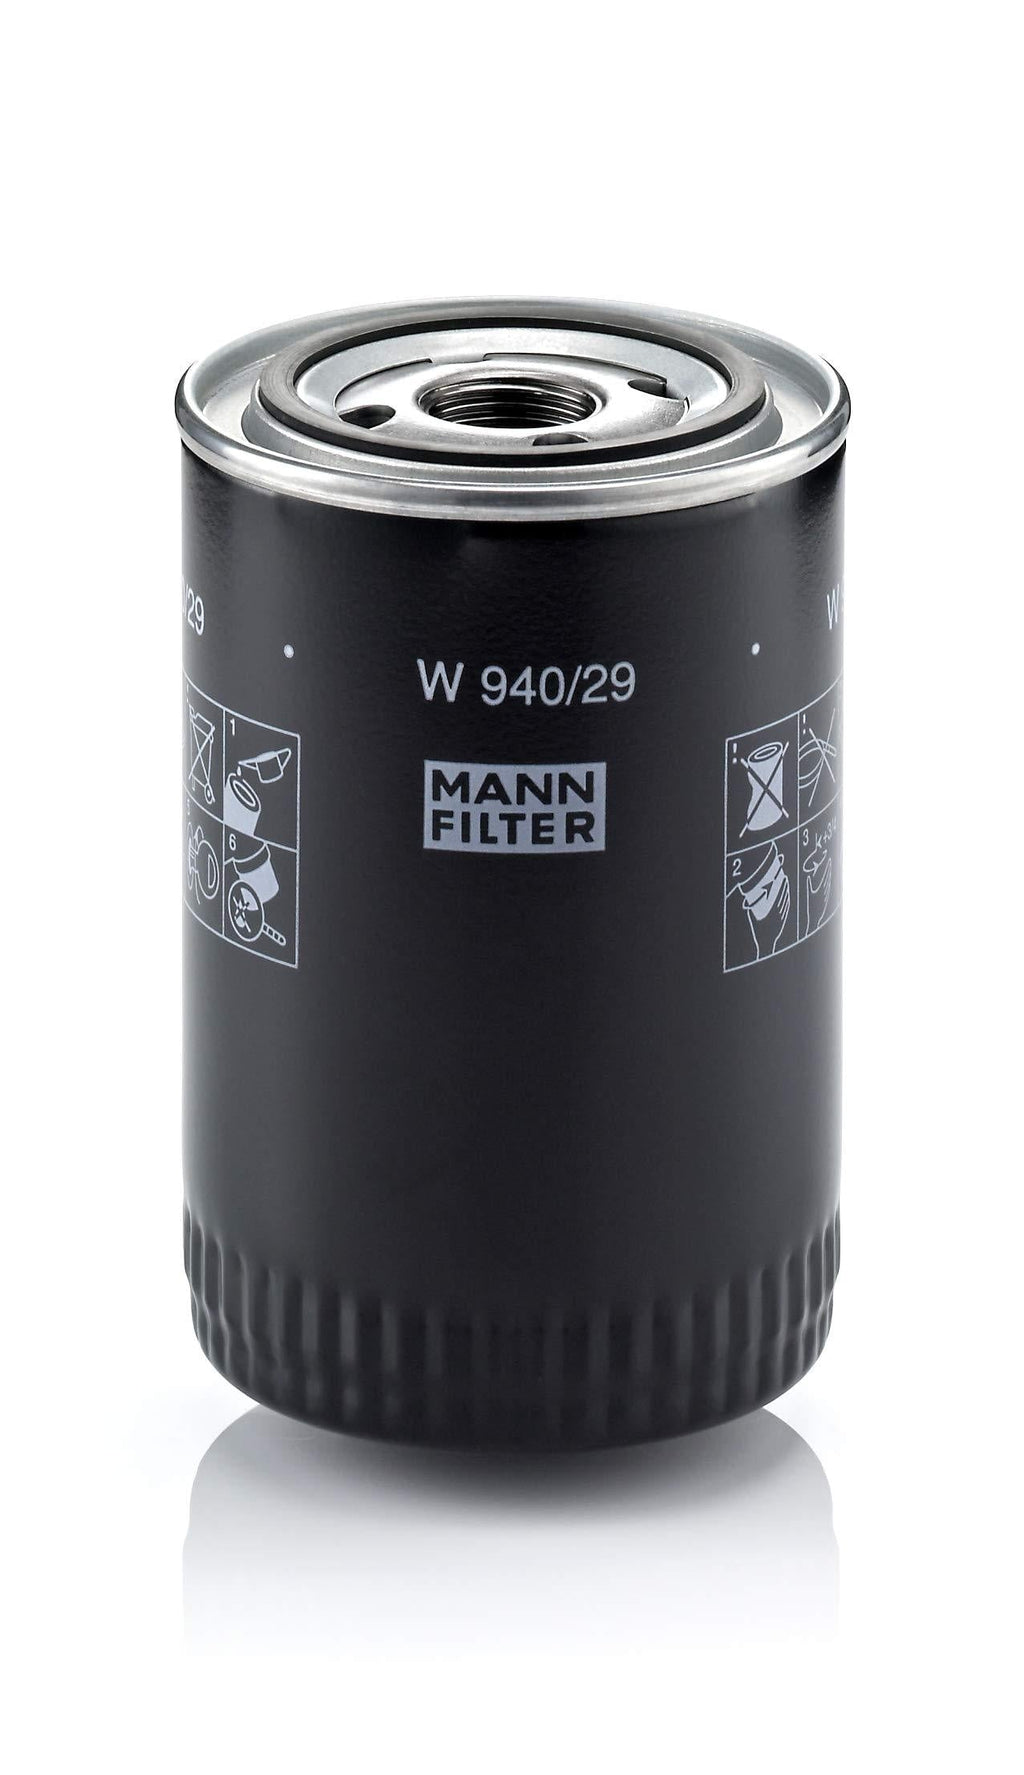 Mann-Filter W 940/29 Spin-on Oil Filter - LeoForward Australia